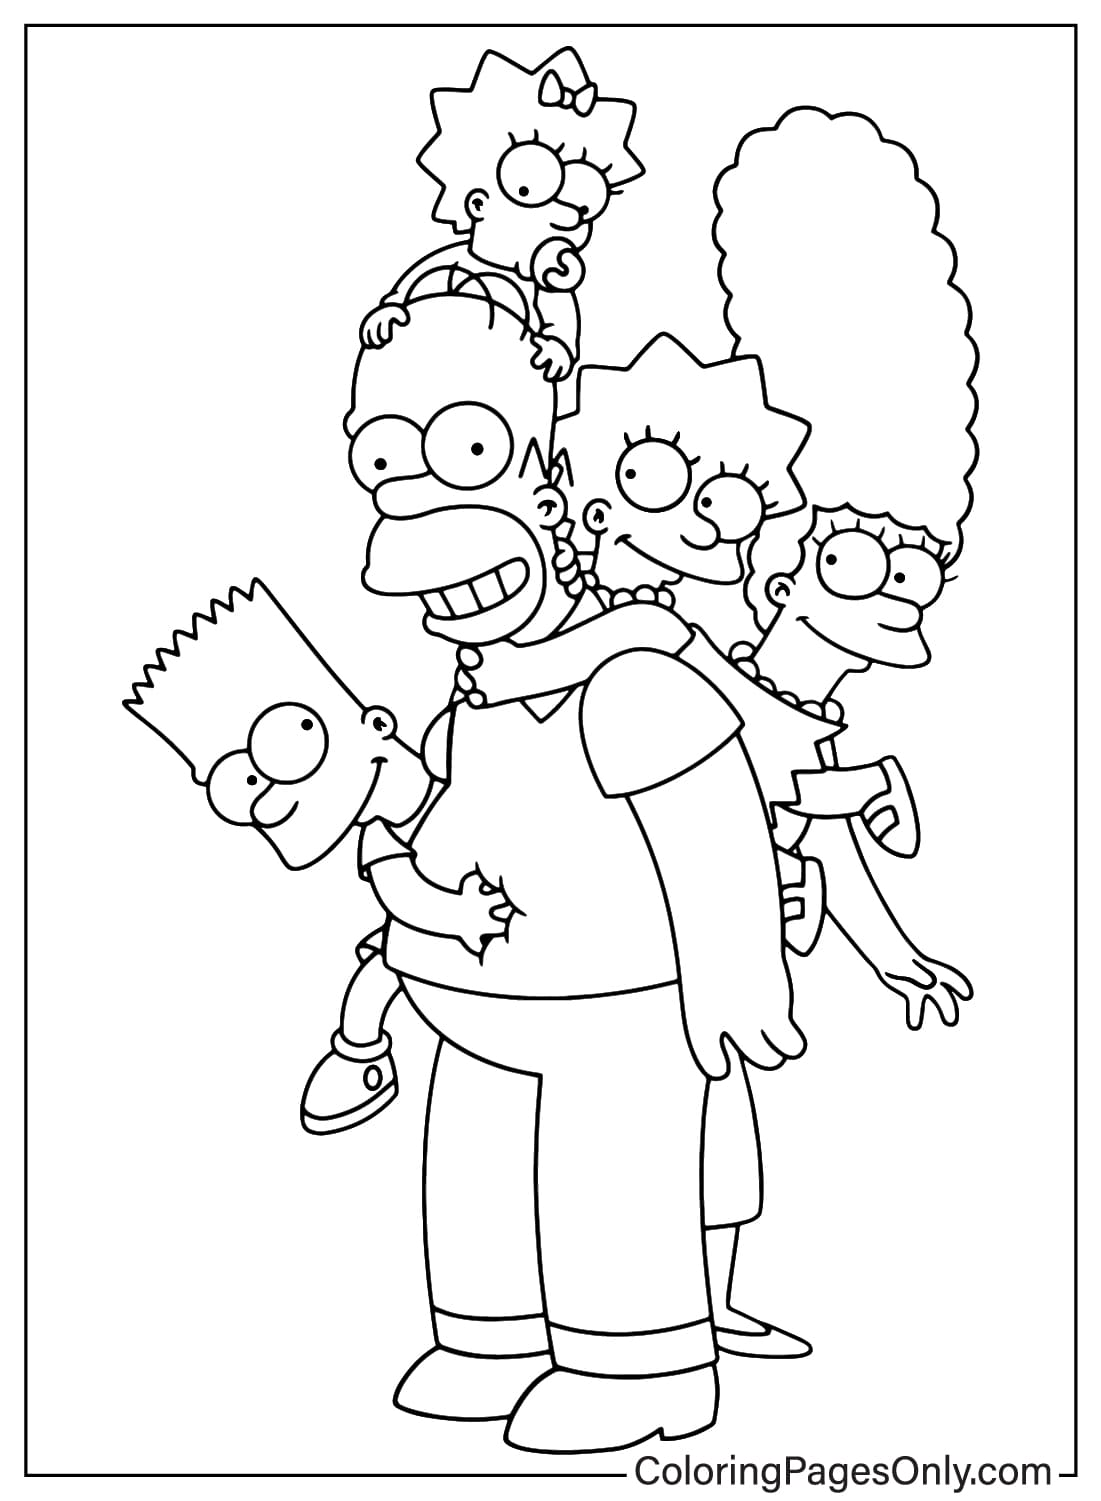 Pagina da colorare stampabile gratuita dei Simpson dai Simpson